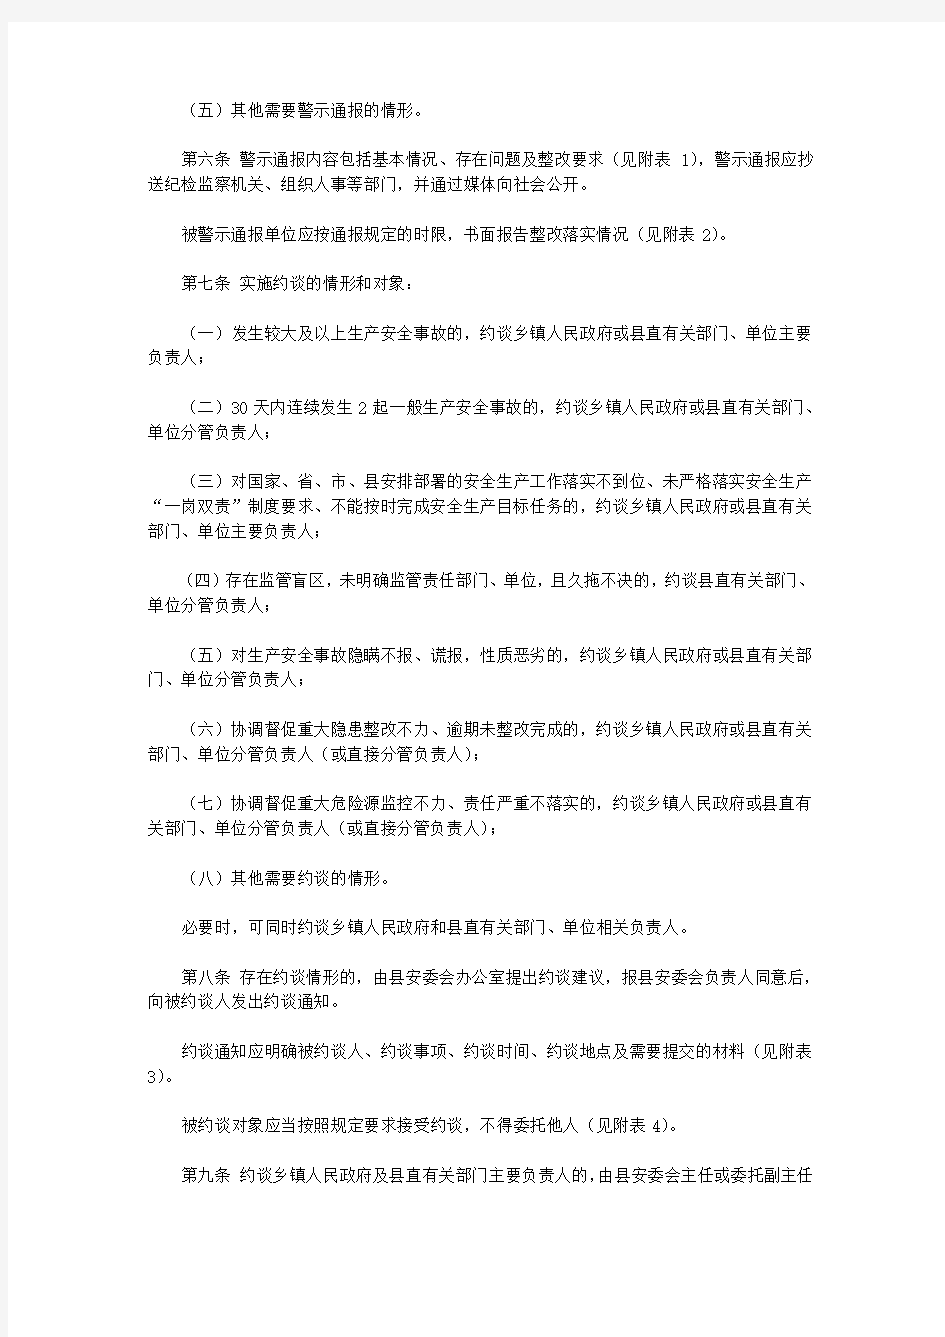 寿宁县安全生产警示通报和约谈制度(2019)